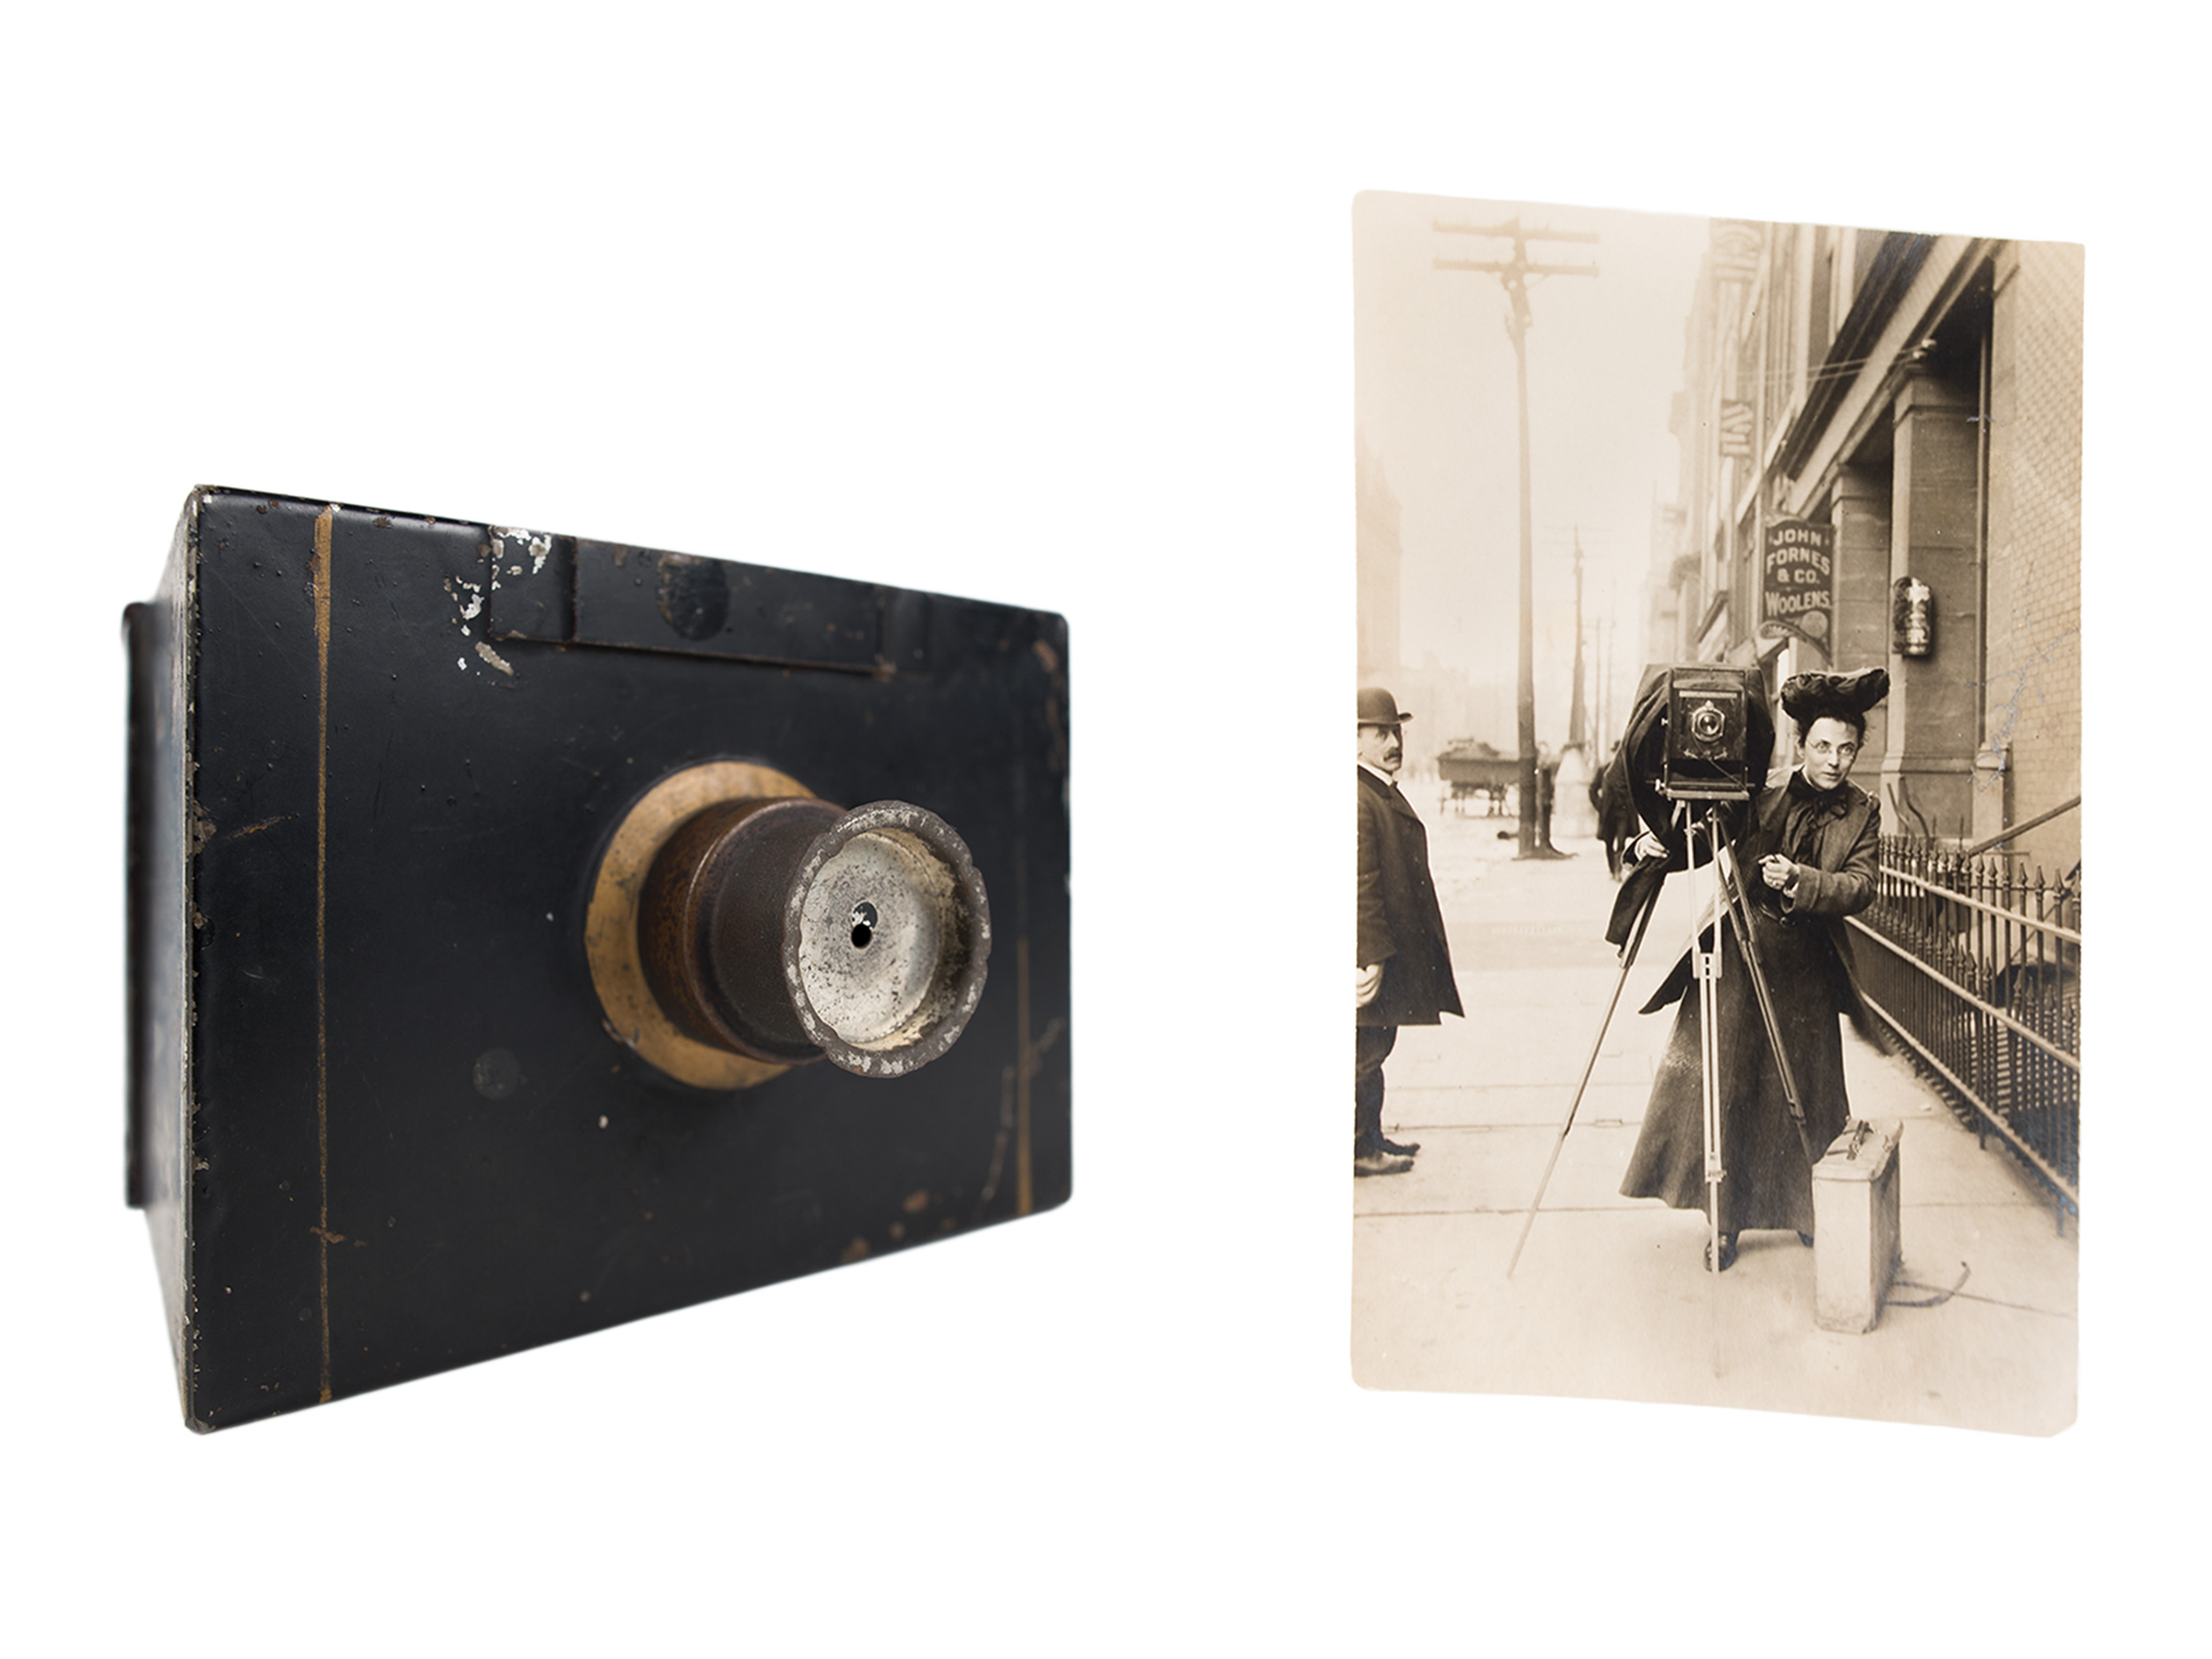 Jessie Tarbox Beals’s first camera, 1888